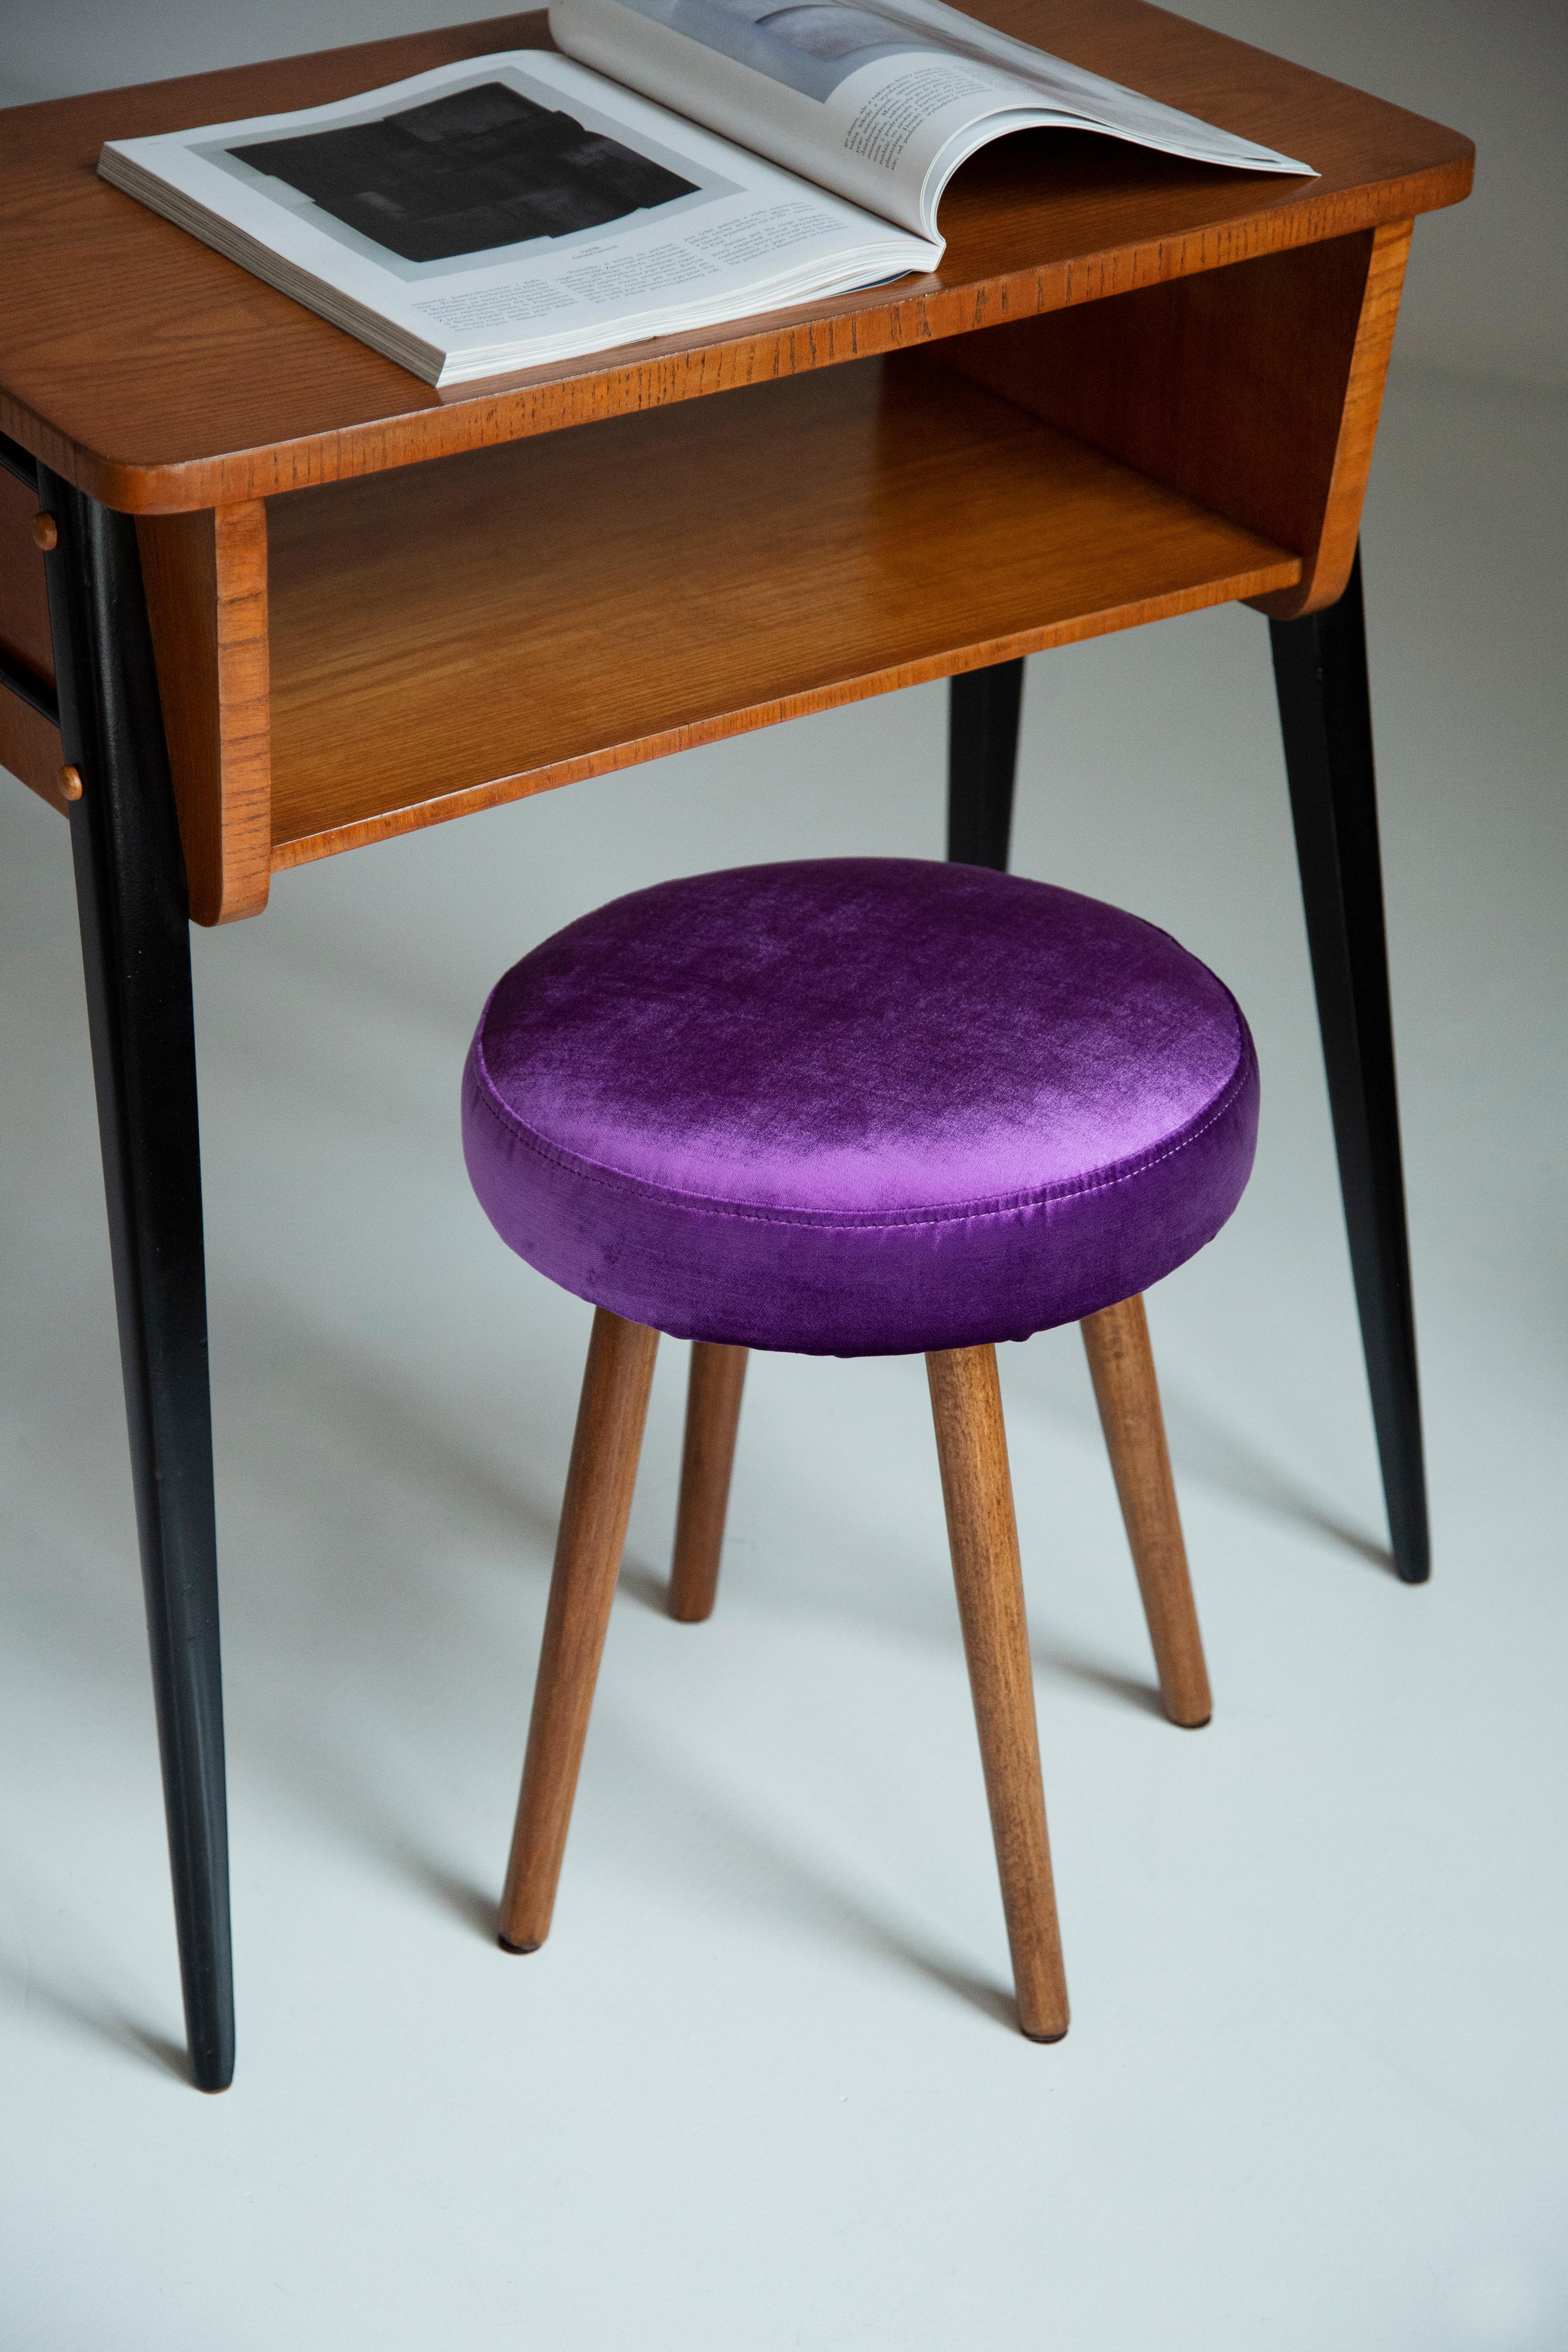 Tabouret du tournant des années 1960 et 1970. Magnifique tapisserie en velours de couleur violette brillante. Le tabouret est composé d'une partie rembourrée, d'un siège et de pieds en bois se rétrécissant vers le bas, caractéristiques du style des